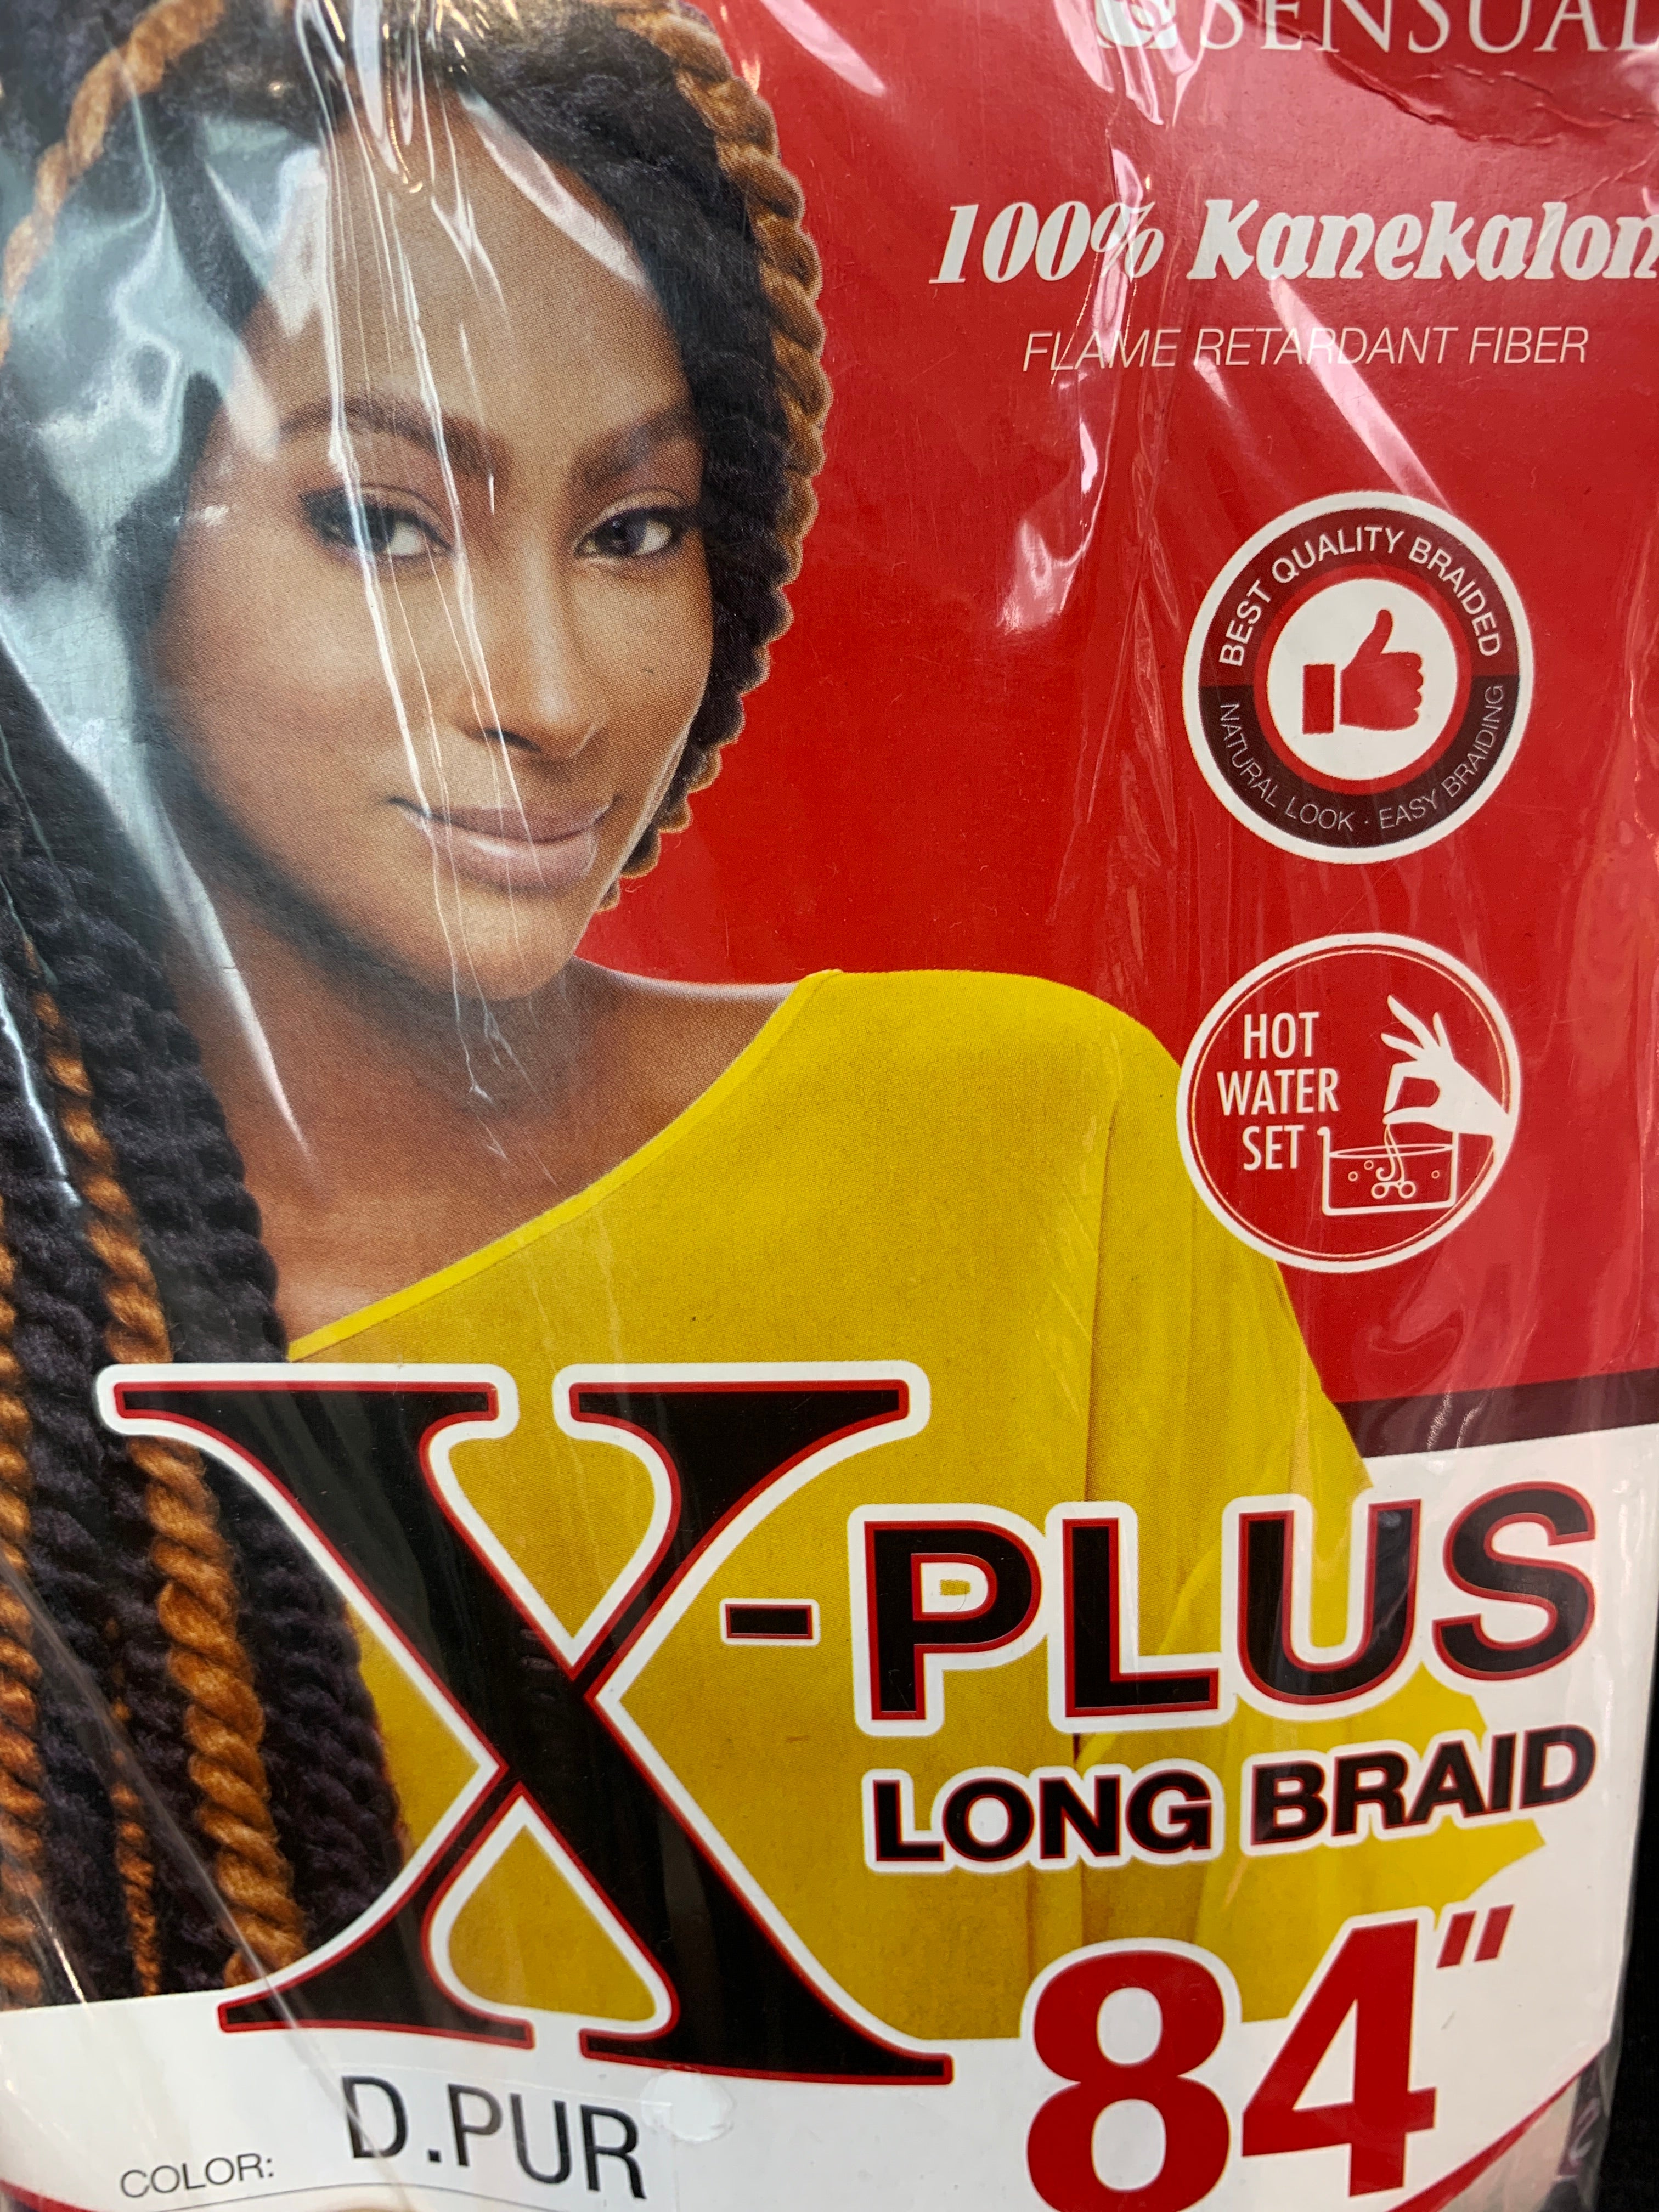 Sensual x-plus long braid 84”